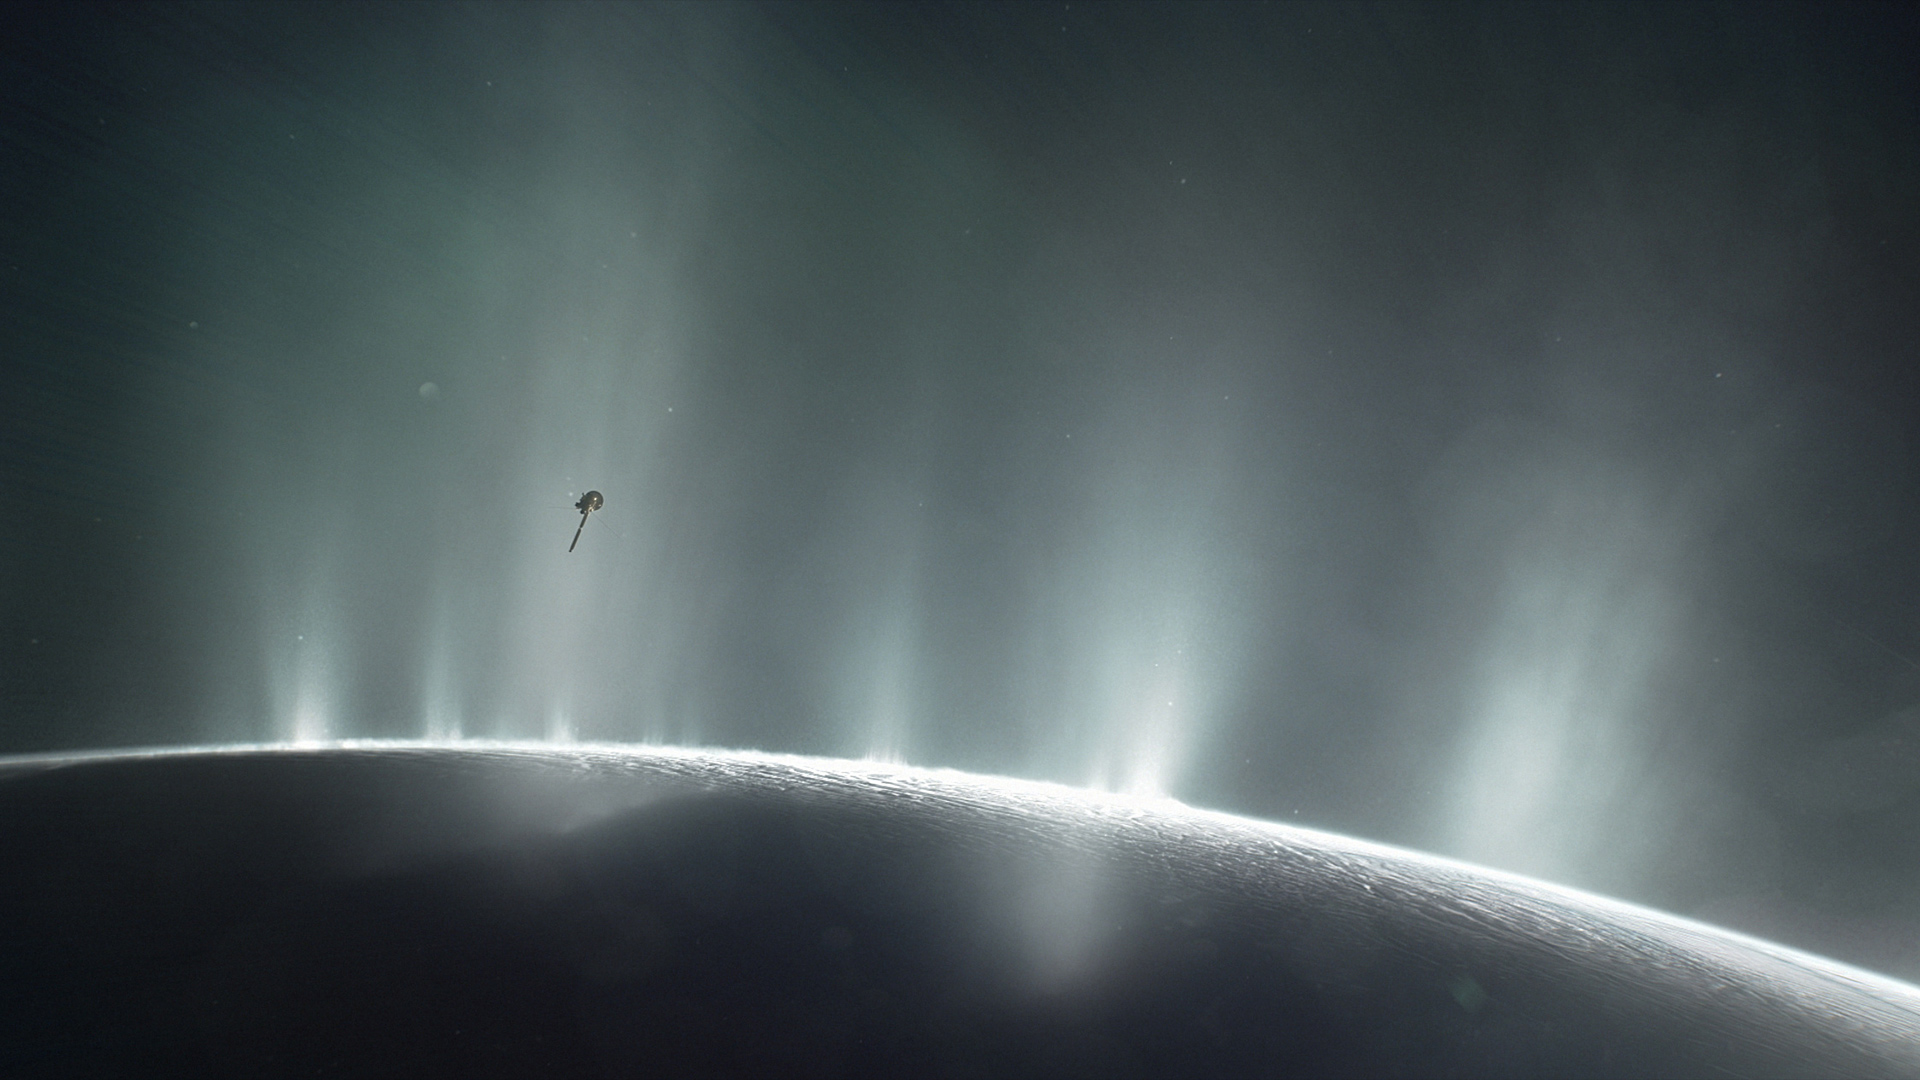 La sonda Cassini descubre la posibilidad de vida extraterrestre en la luna Encelado de Saturno